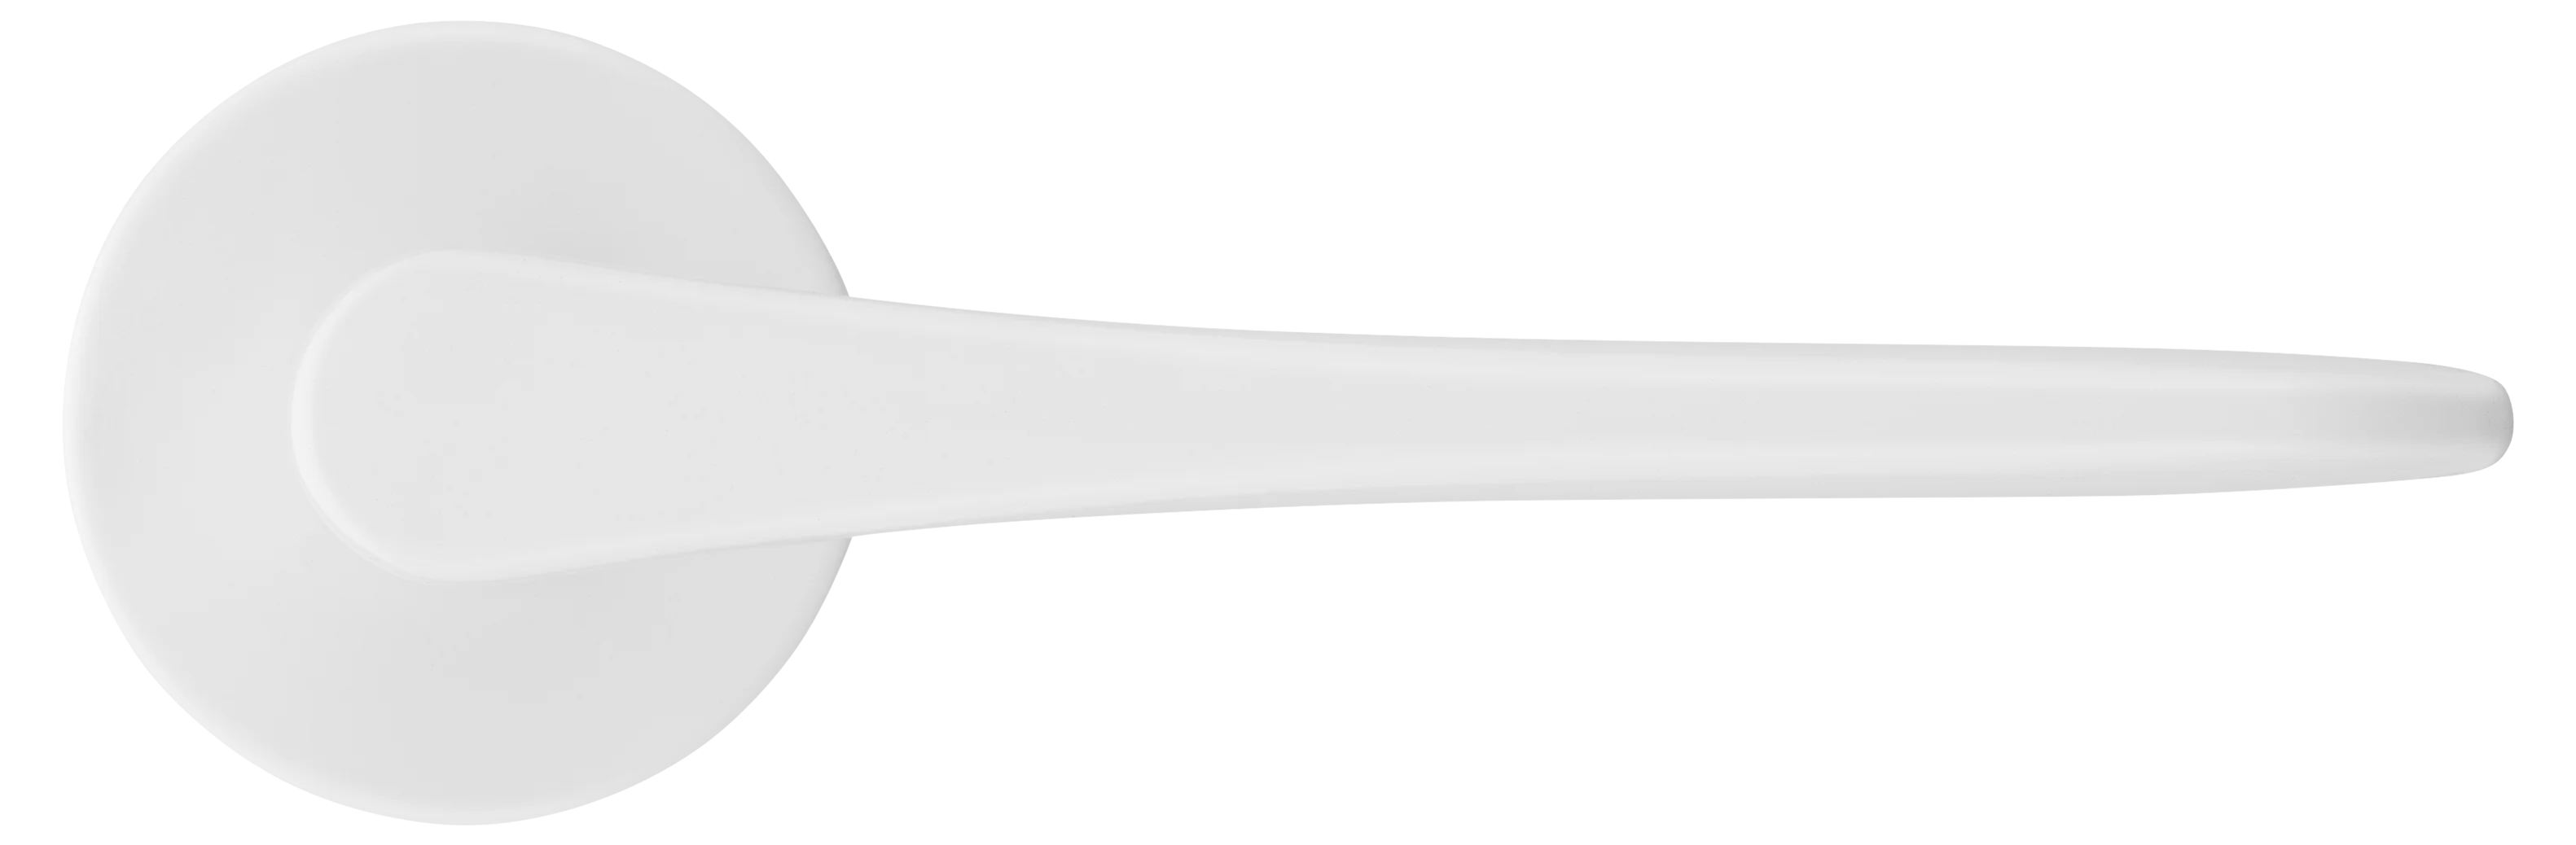 AULA R5 BIA, ручка дверная на розетке 7мм, цвет -  белый фото купить в Хабаровске